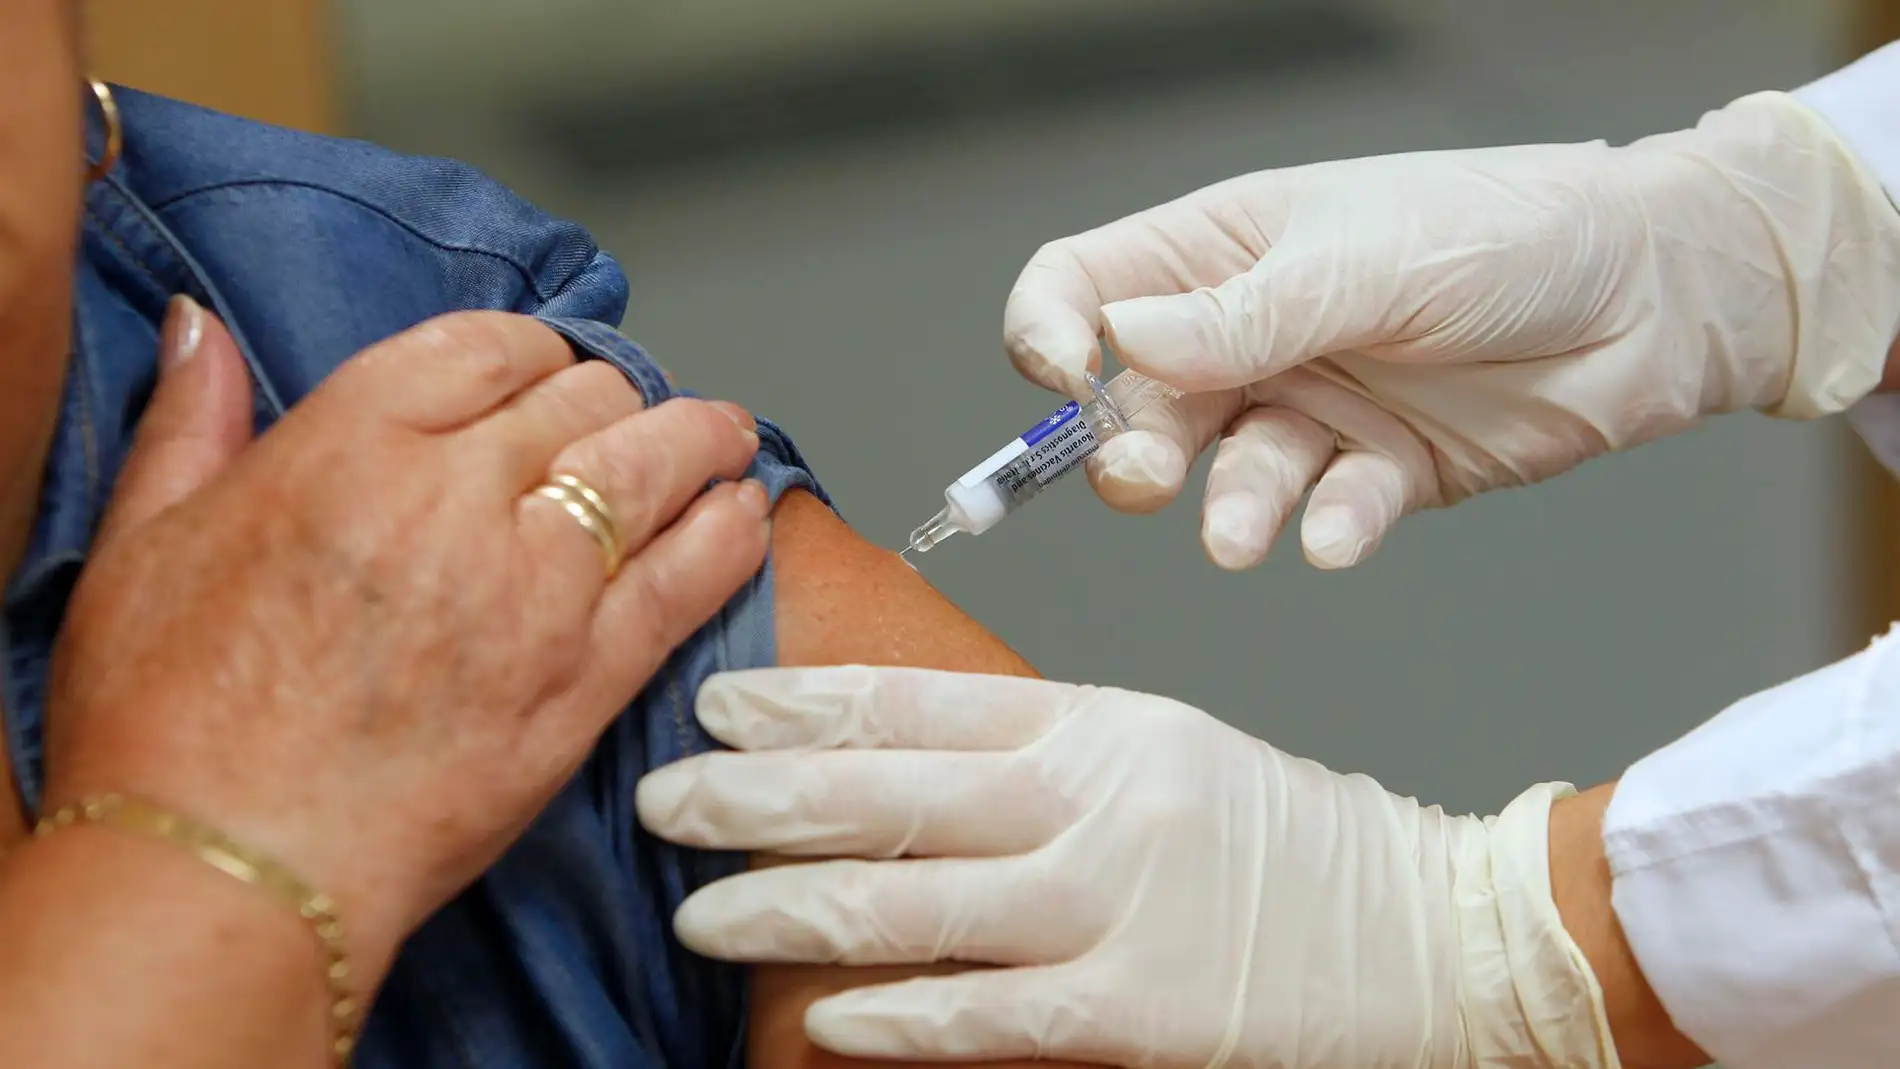 Una enfermera pone una vacuna contra la gripe. Foto archivo.